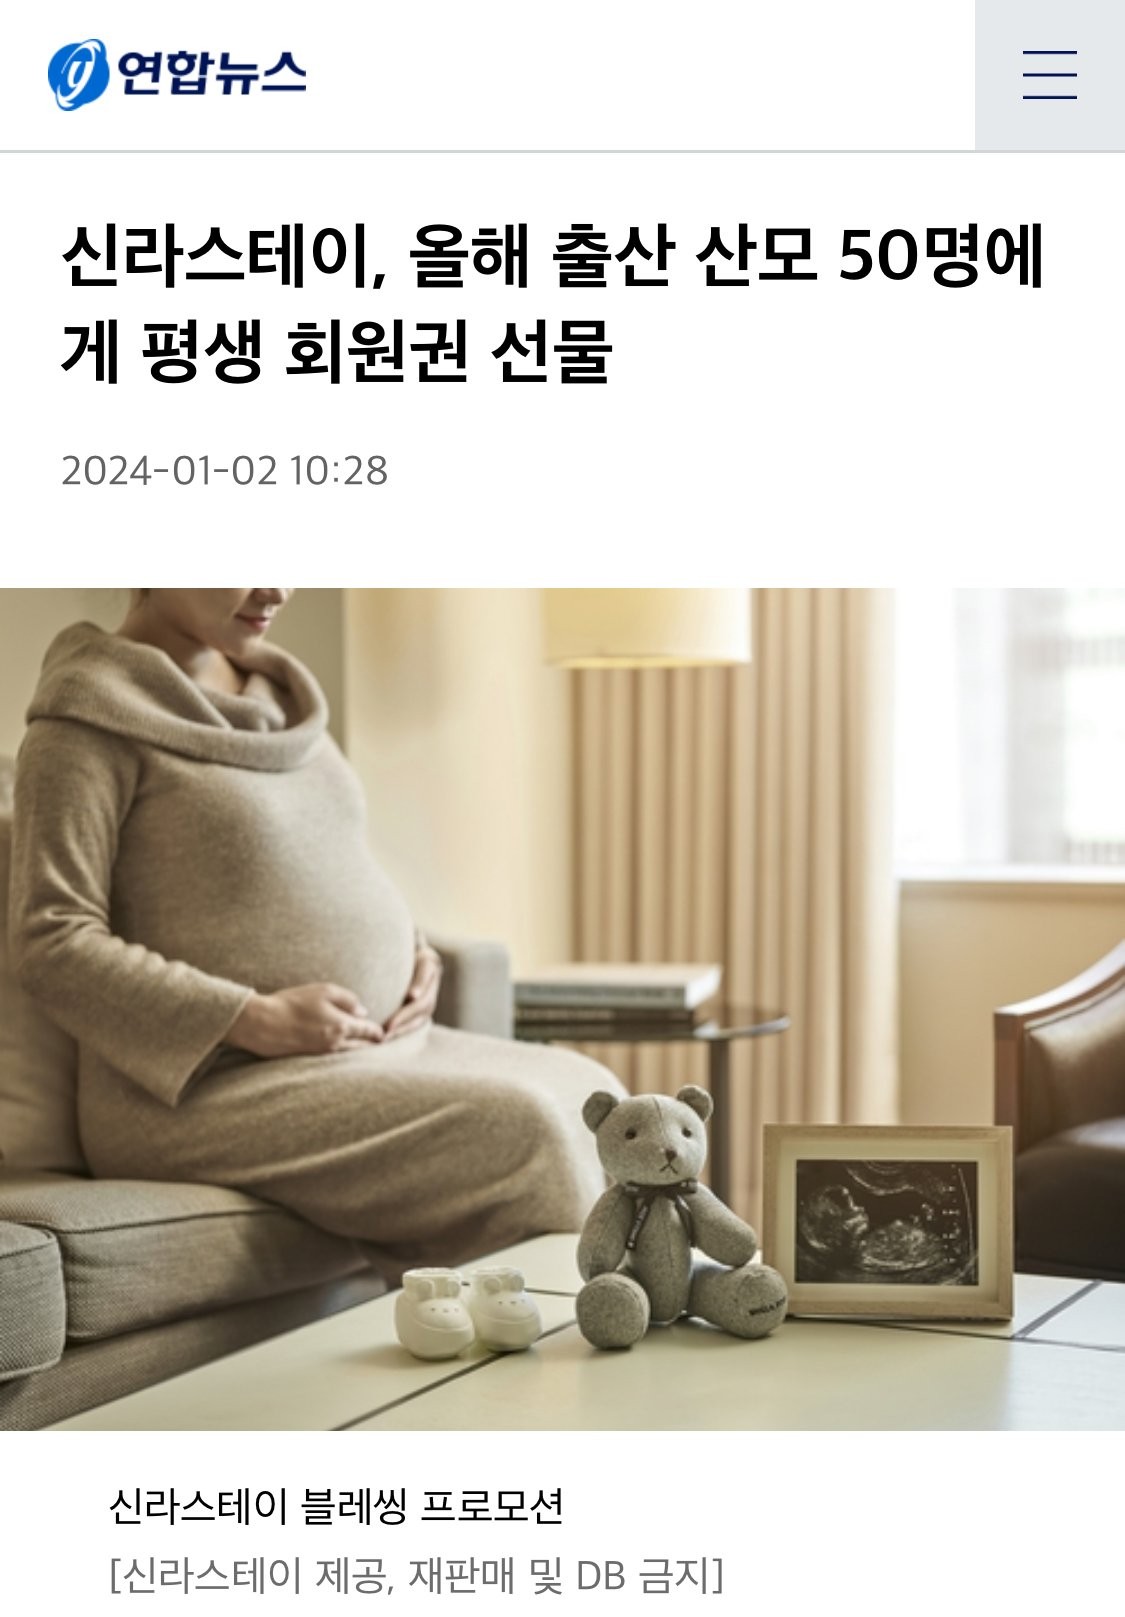 신라스테이. 올해 출산 산모 50명에게 평생회원권 증정